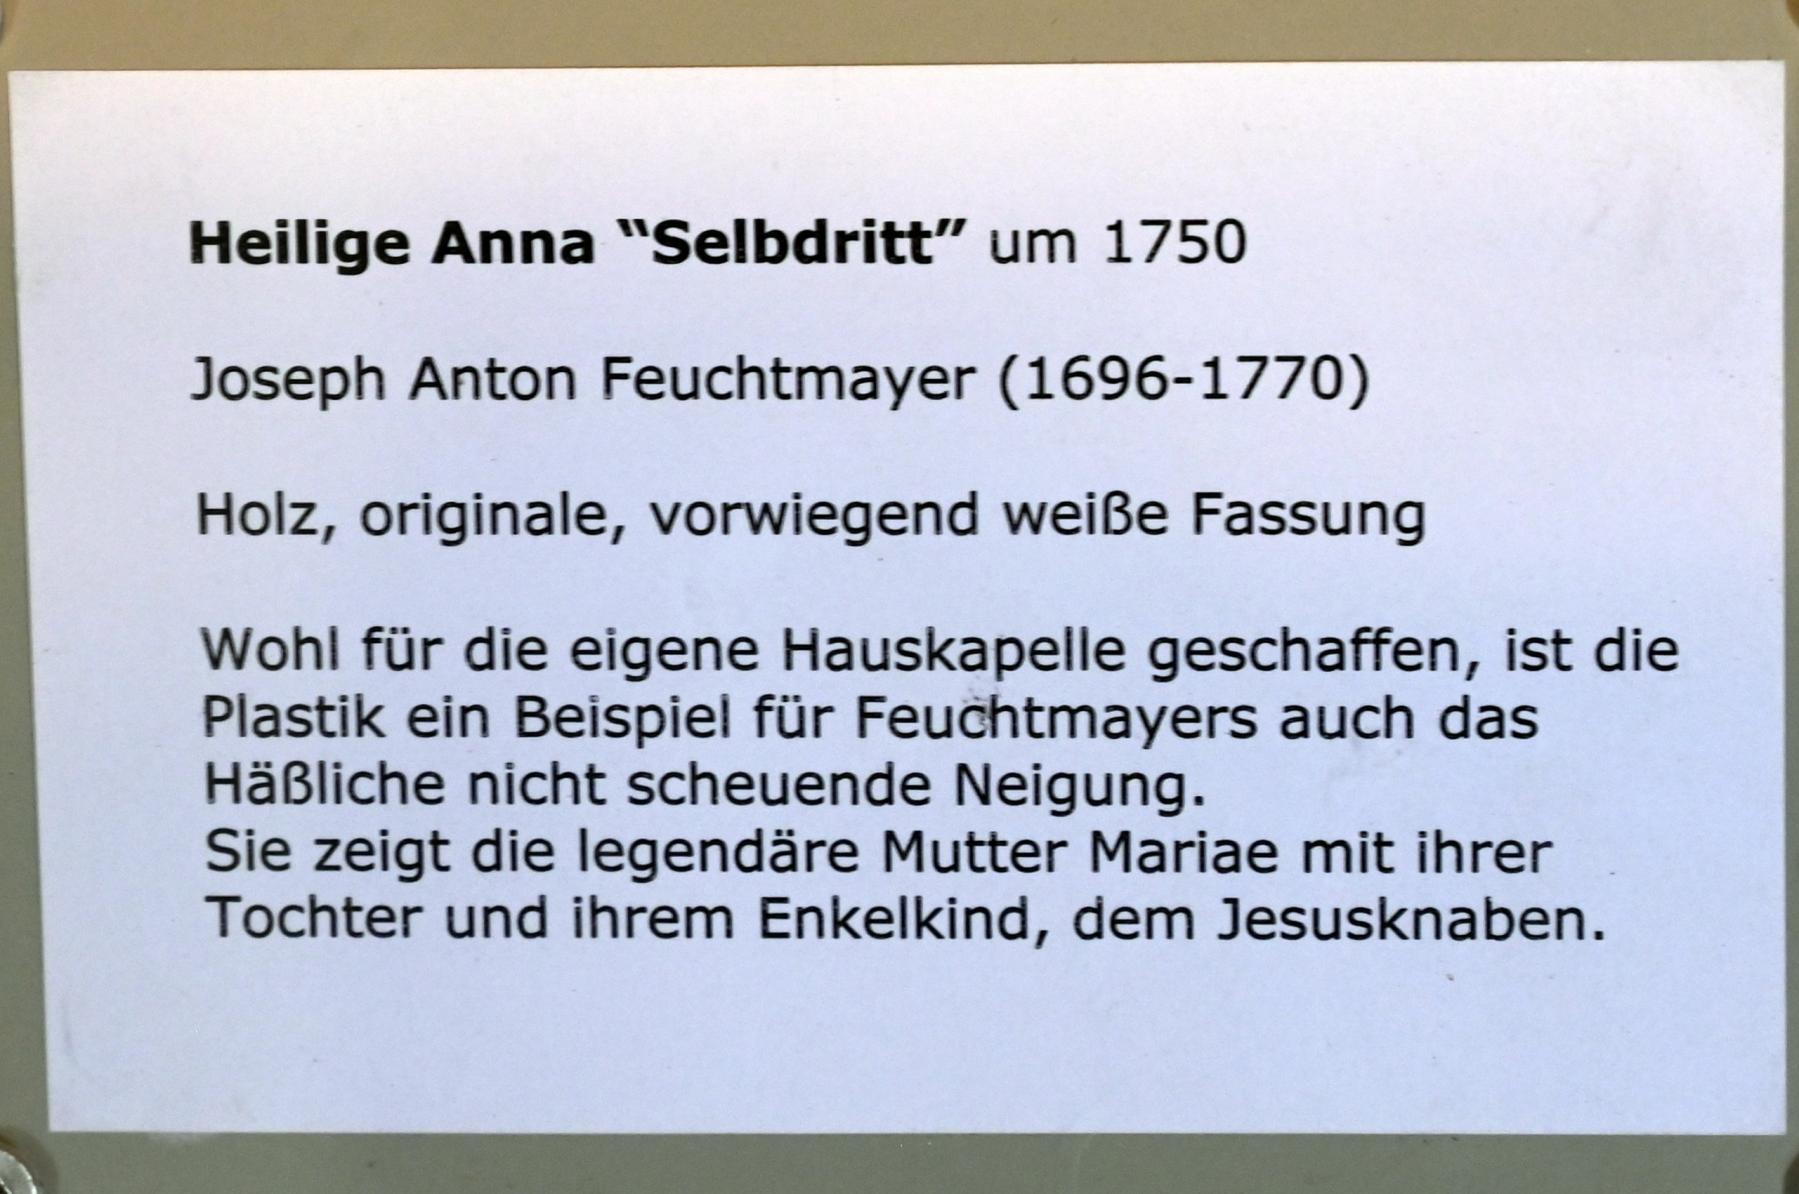 Joseph Anton Feuchtmayer (1718–1750), Heilige Anna "Selbdritt", Überlingen, Städtisches Museum, Kleiner Barocksaal, um 1750, Bild 4/4